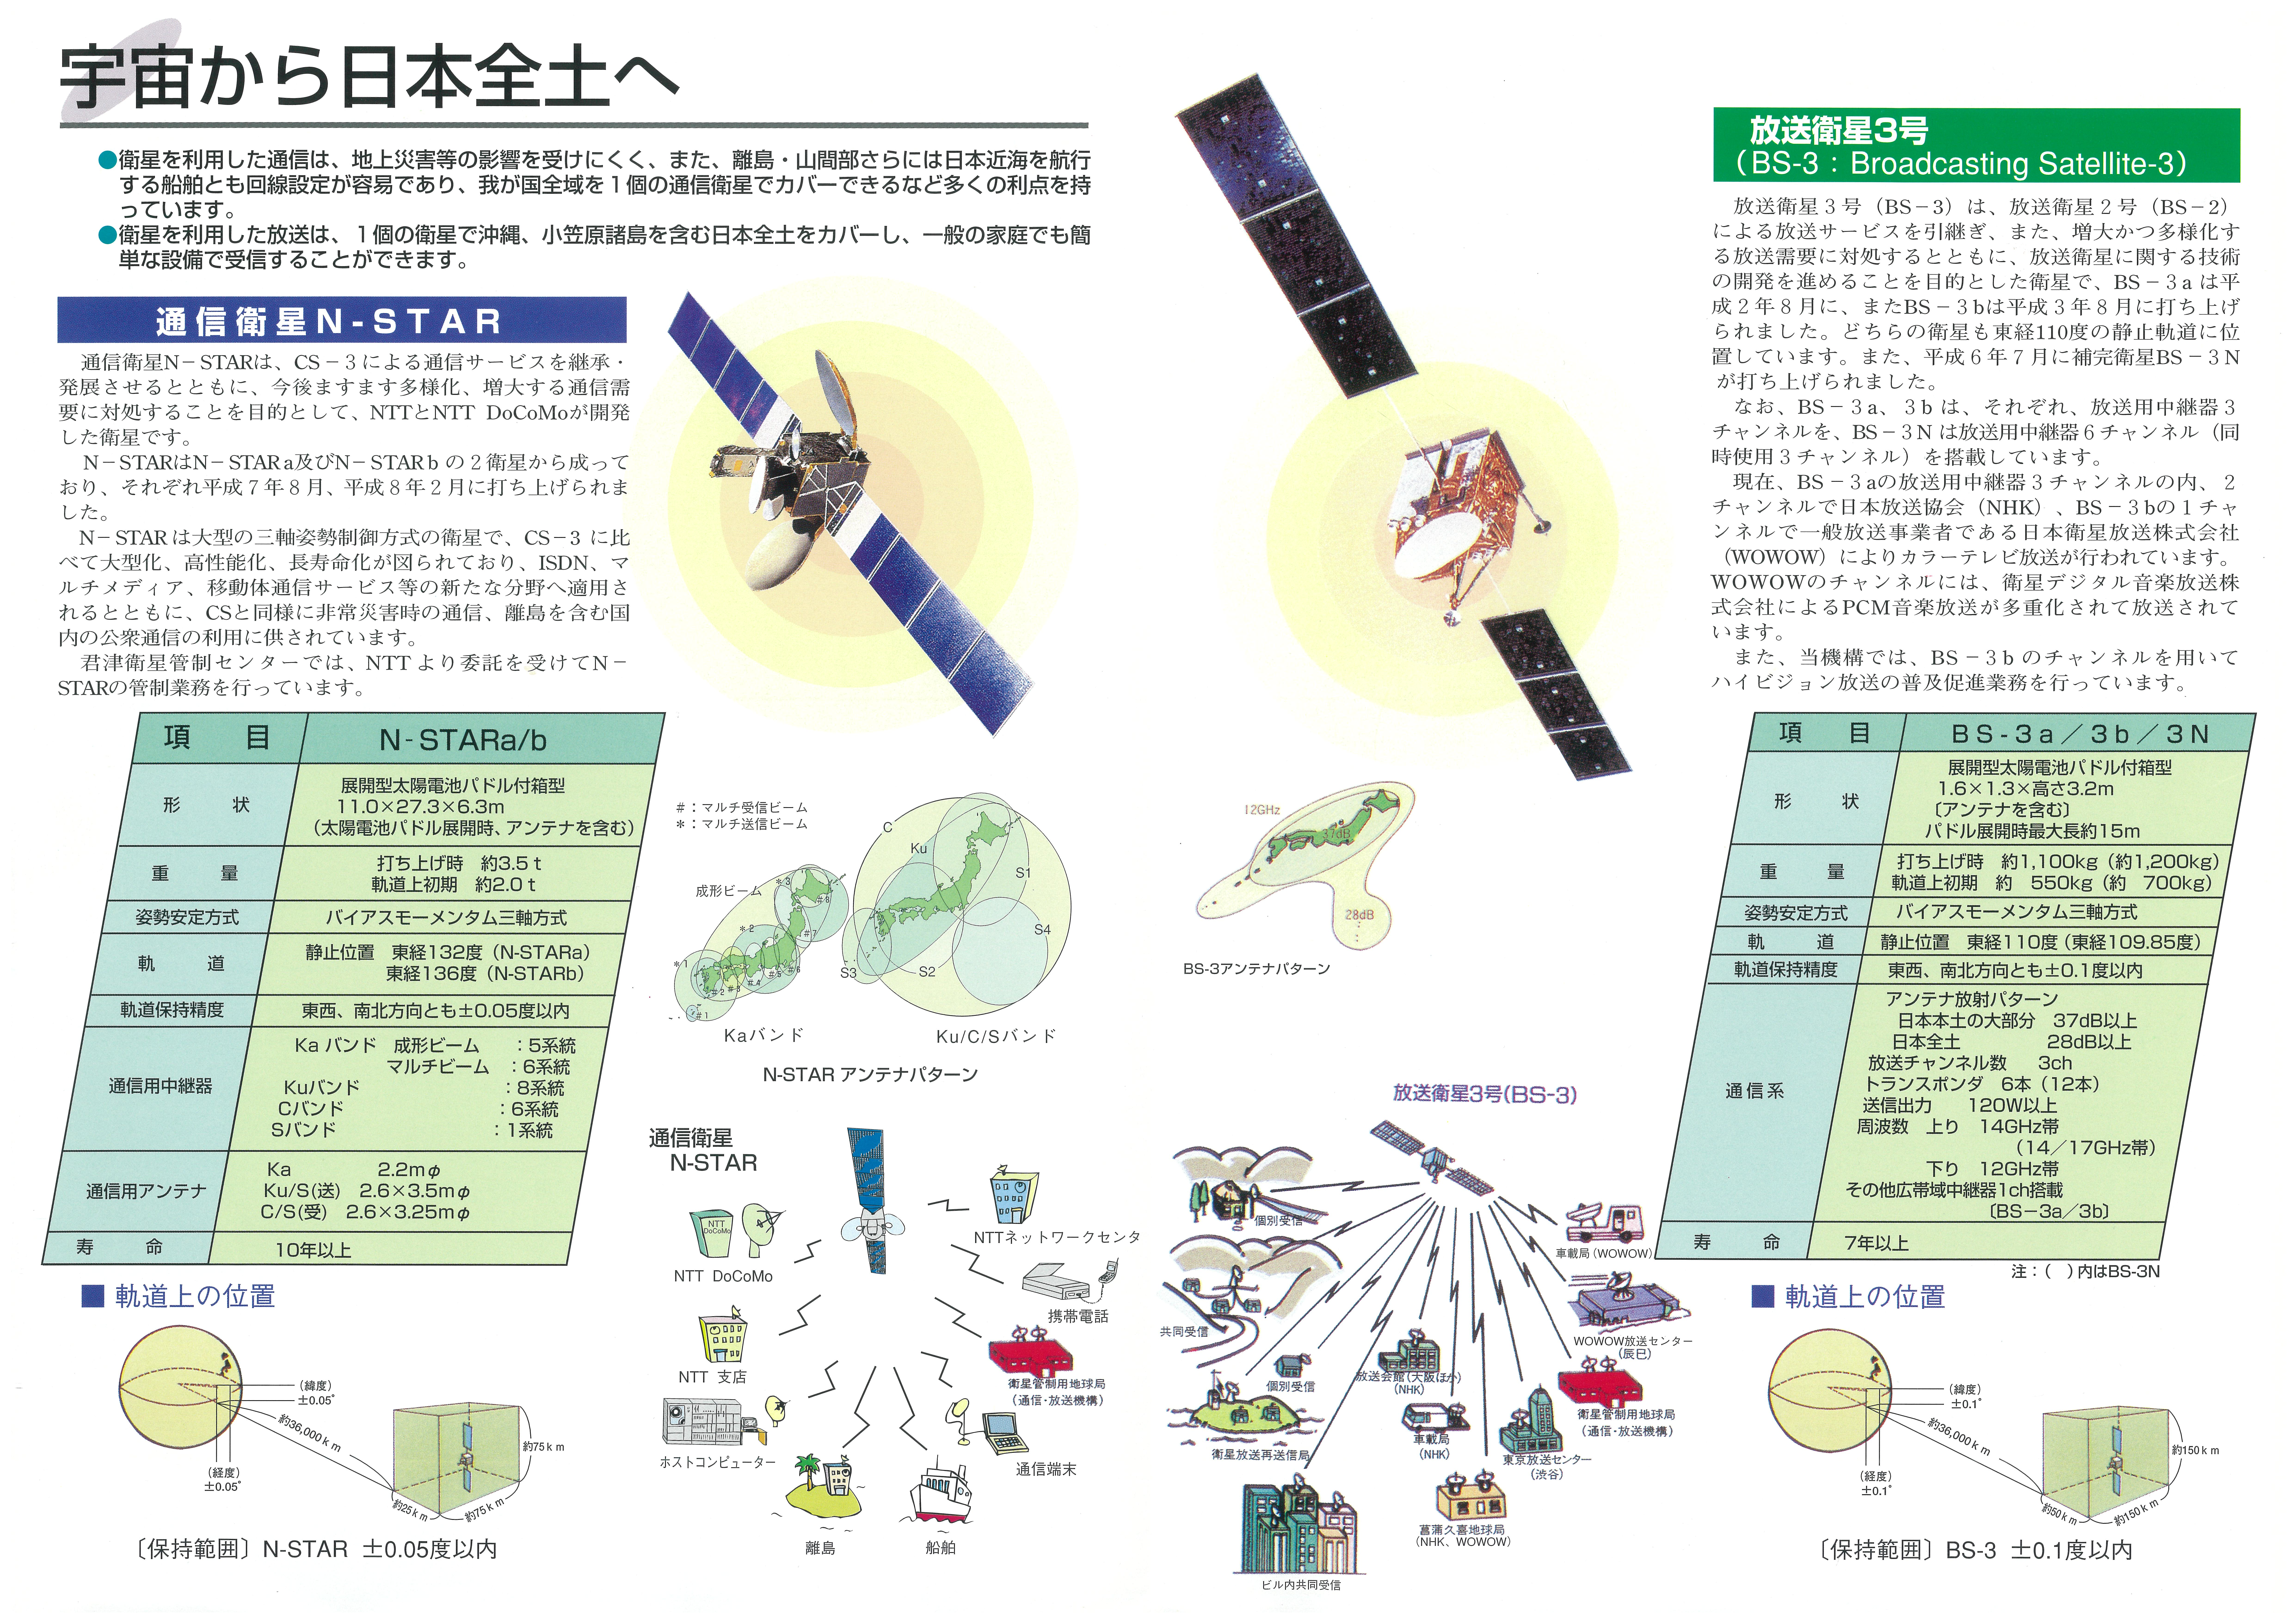 君津衛星管制センターパンフレット2・3ページ目